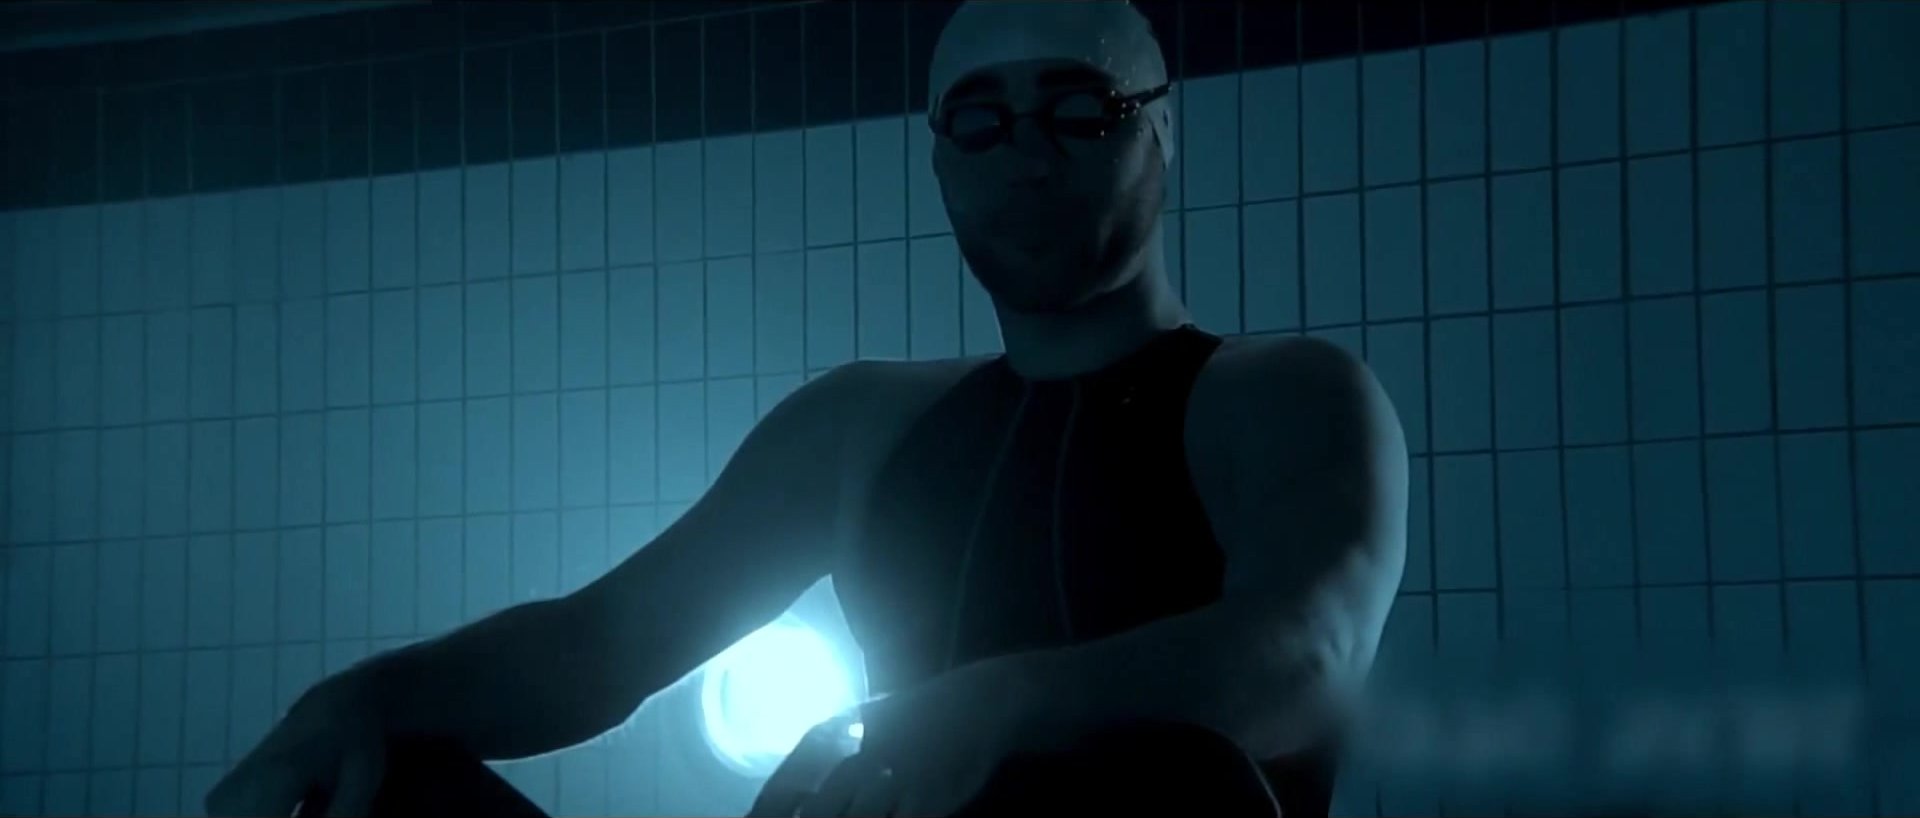 French blind guy tries apnea underwater in wetsuit